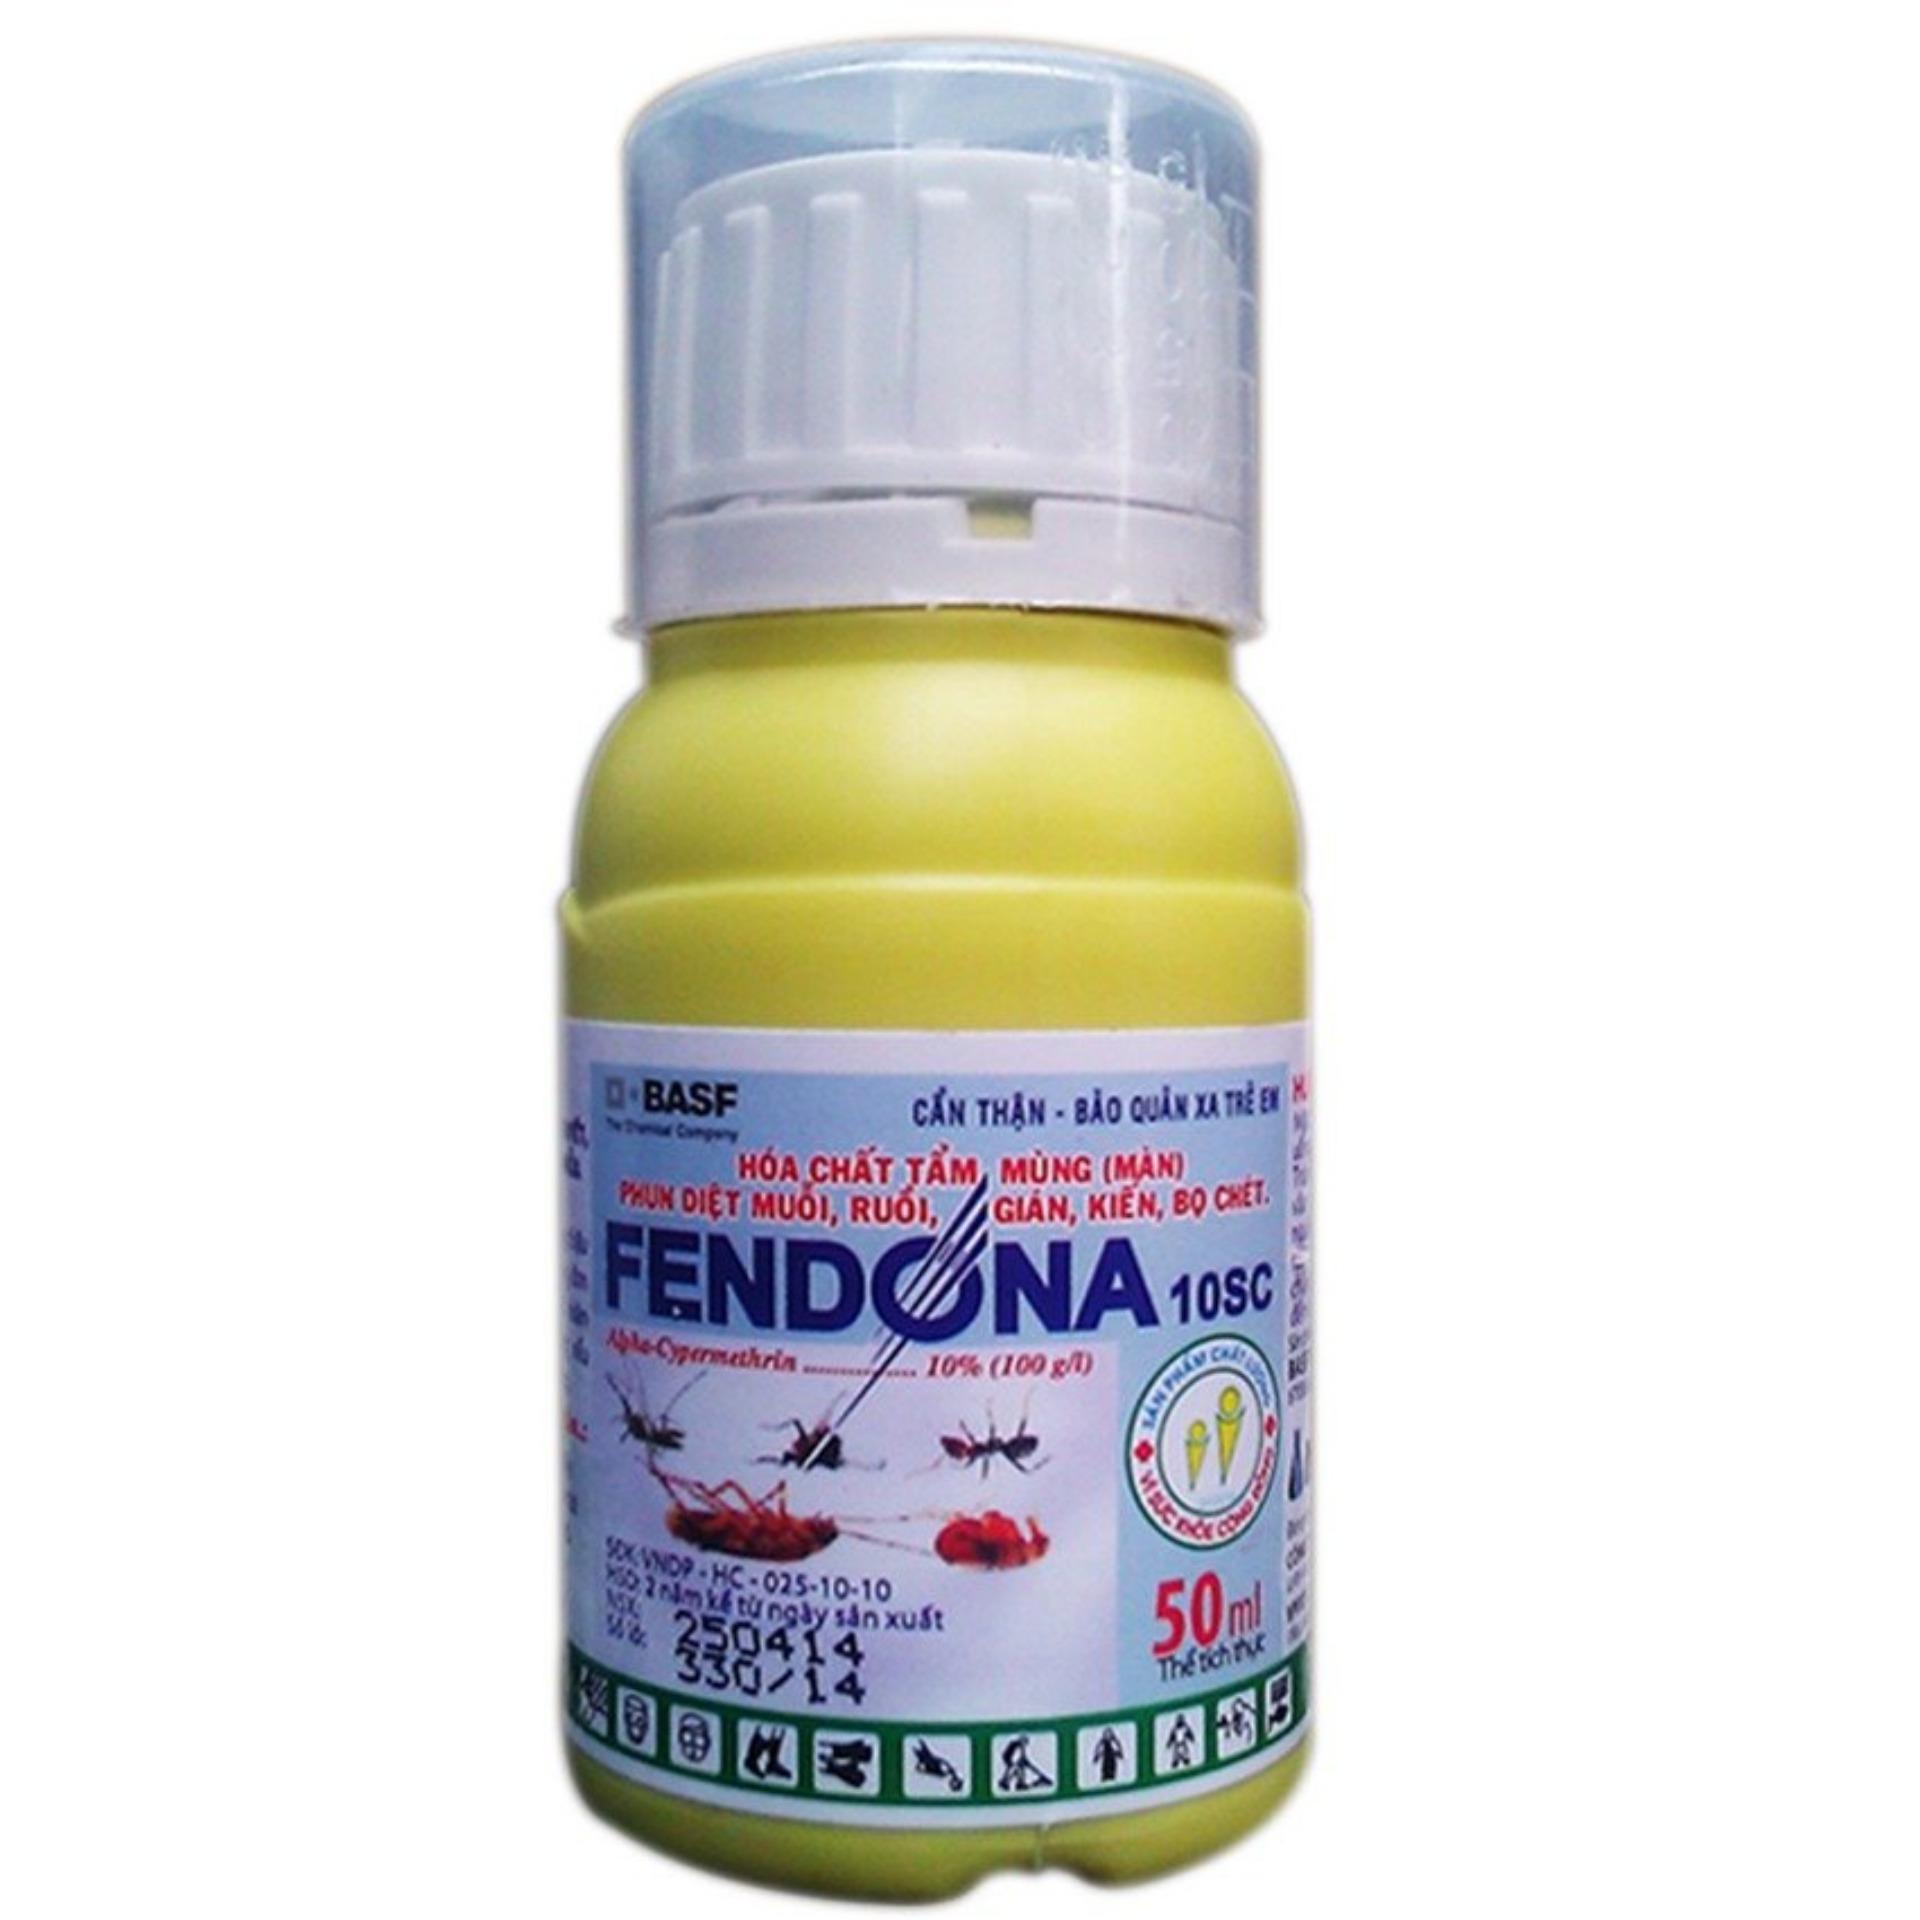 Fendona Combo 05 lọ - dung dịch diệt muỗi, côn trùng Fendona 10SC 50ml ngăn ngừa dịch ZIKA (Thụy Sỹ)